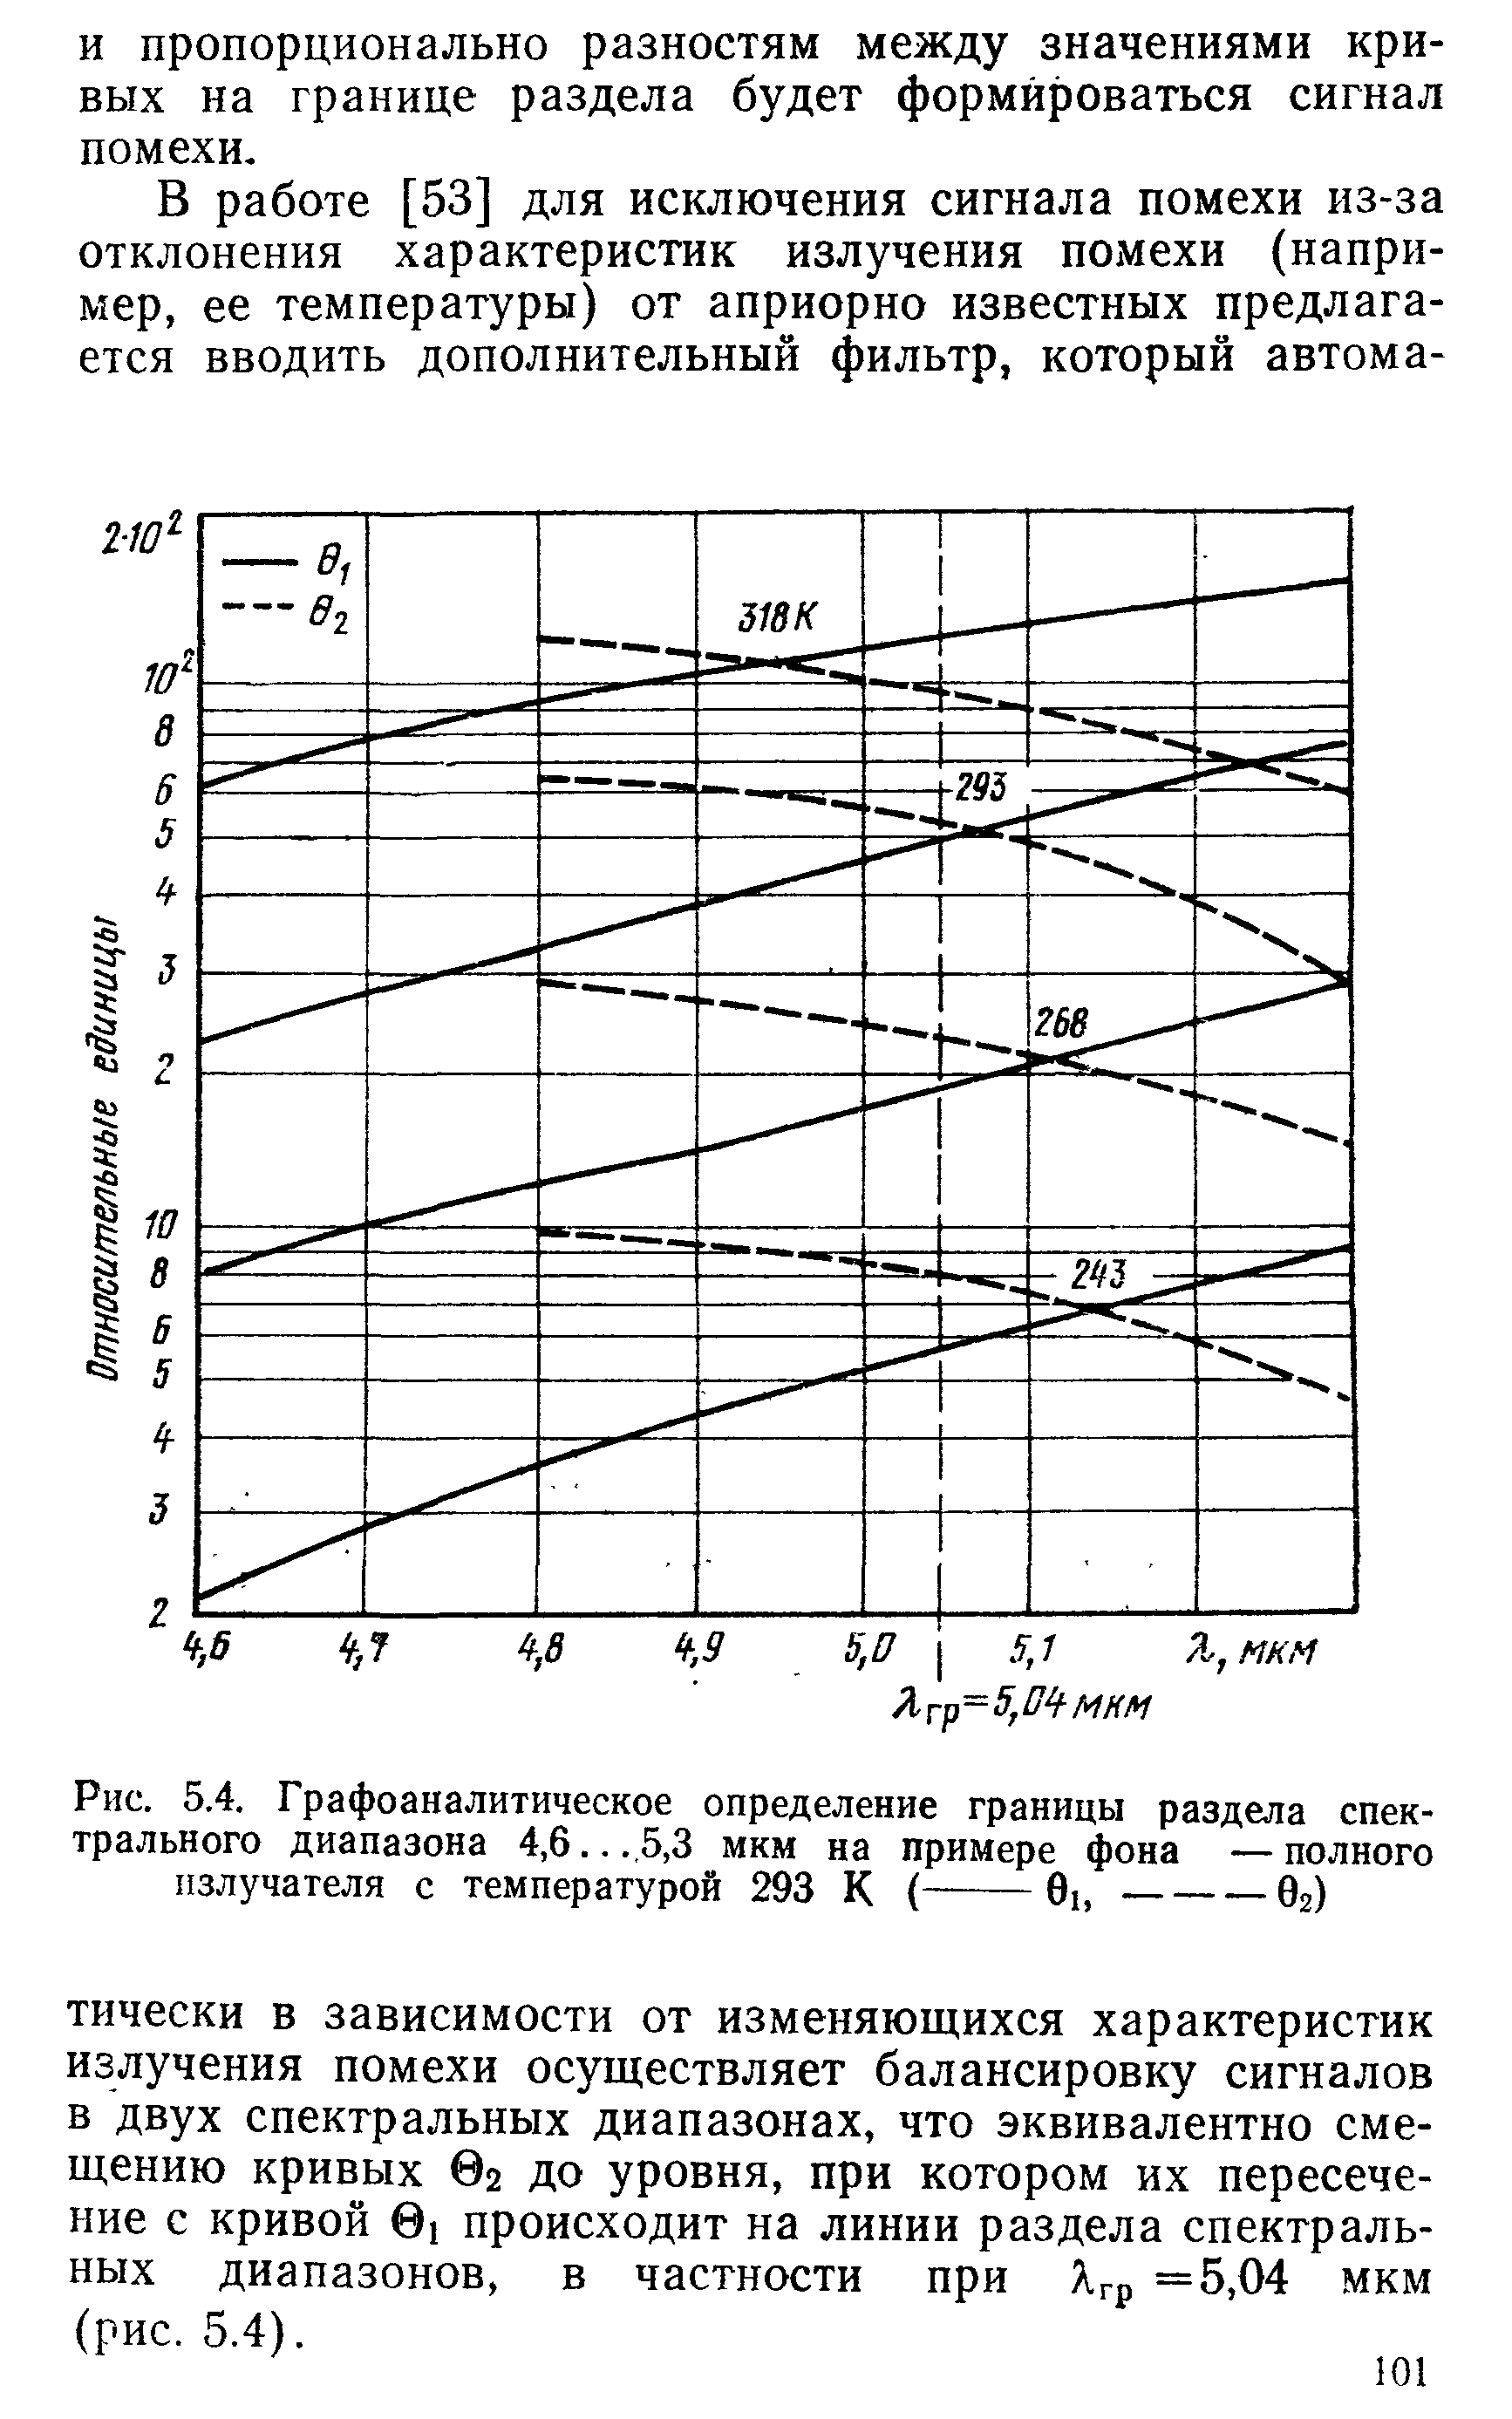 Рис. 5.4, Графоаналитическое определение границы раздела спектрального диапазона 4,6... 5,3 мкм на примере фона — полного излучателя с температурой 293 К (-0ь---бг)
